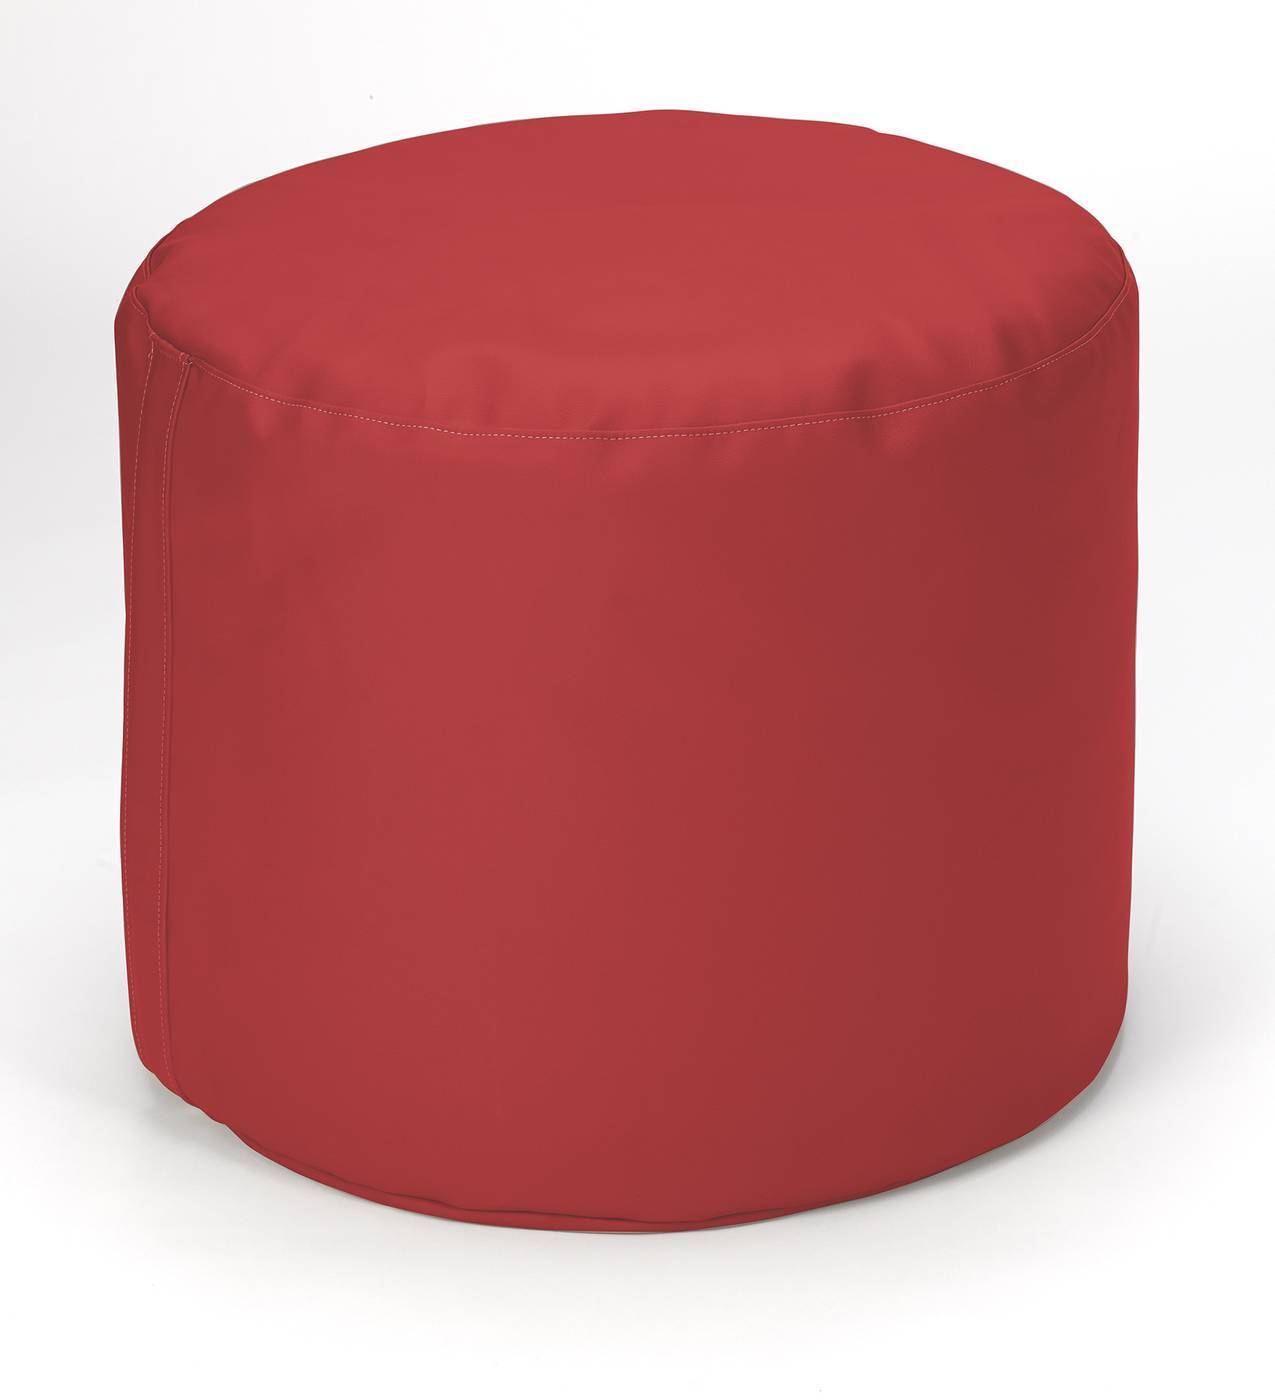 Pouf redondo para habitación juvenil, tapizado en polipiel de alta calidad color rojo